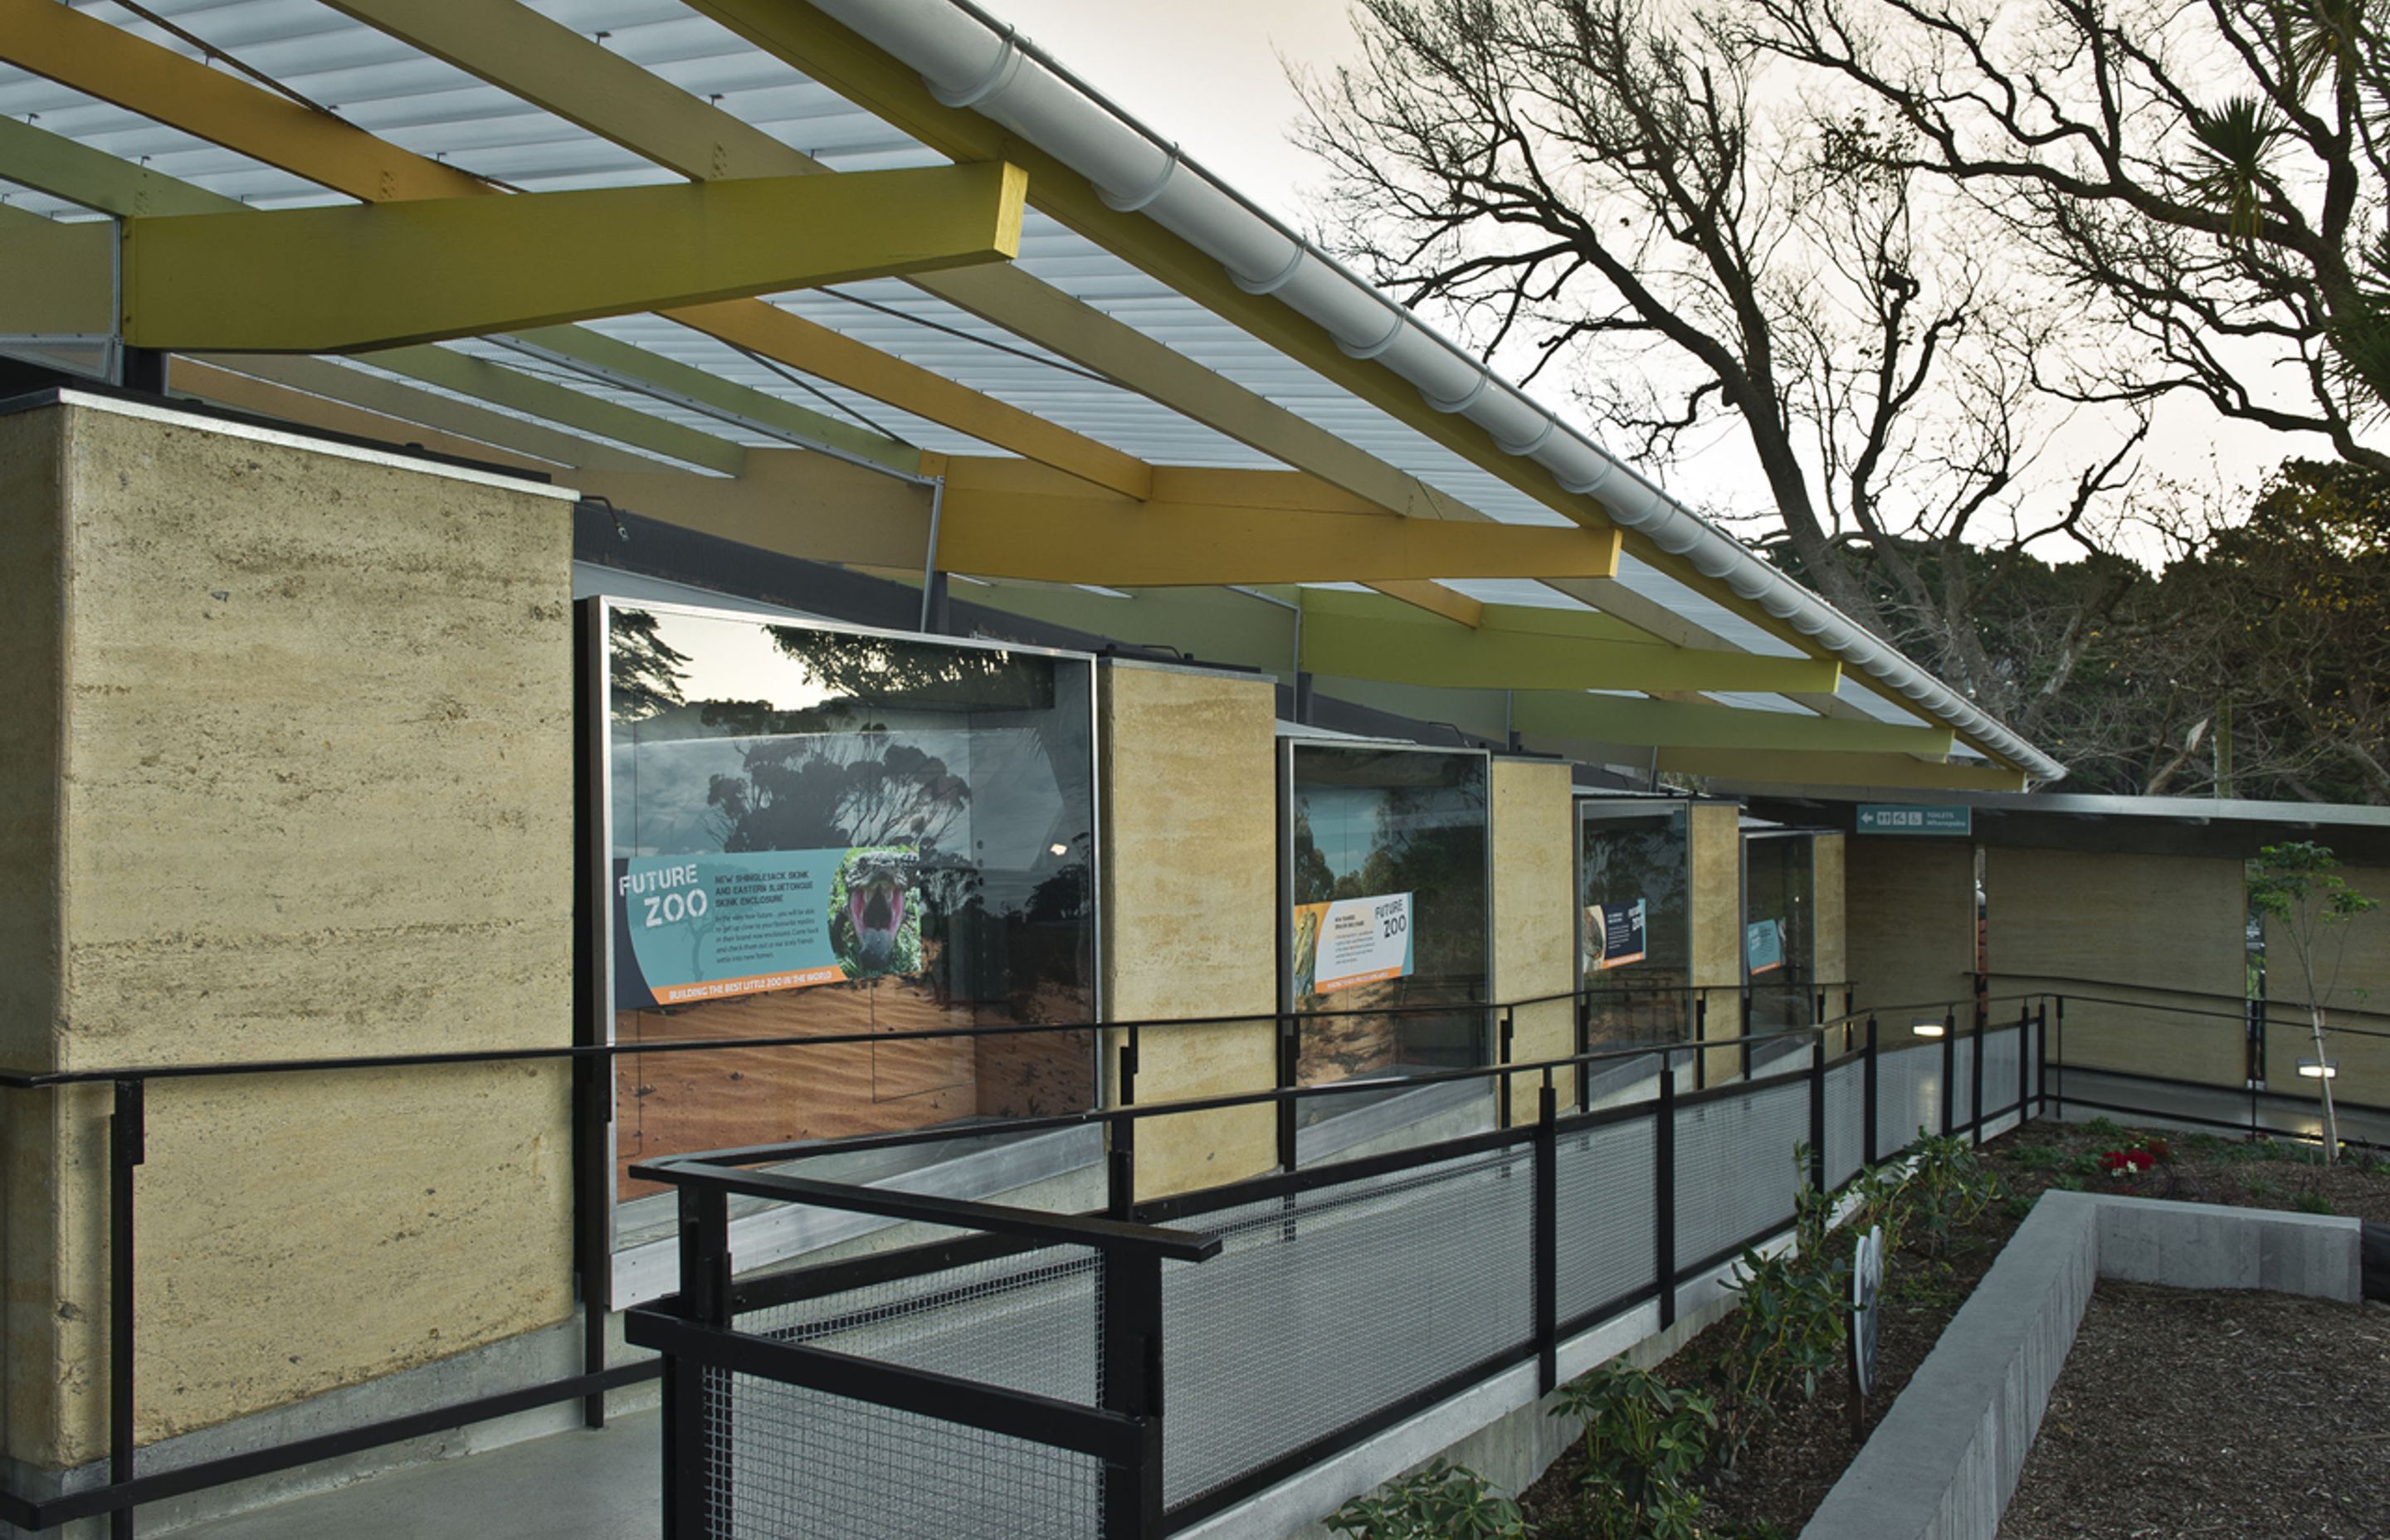 The Wellington Zoo Hub